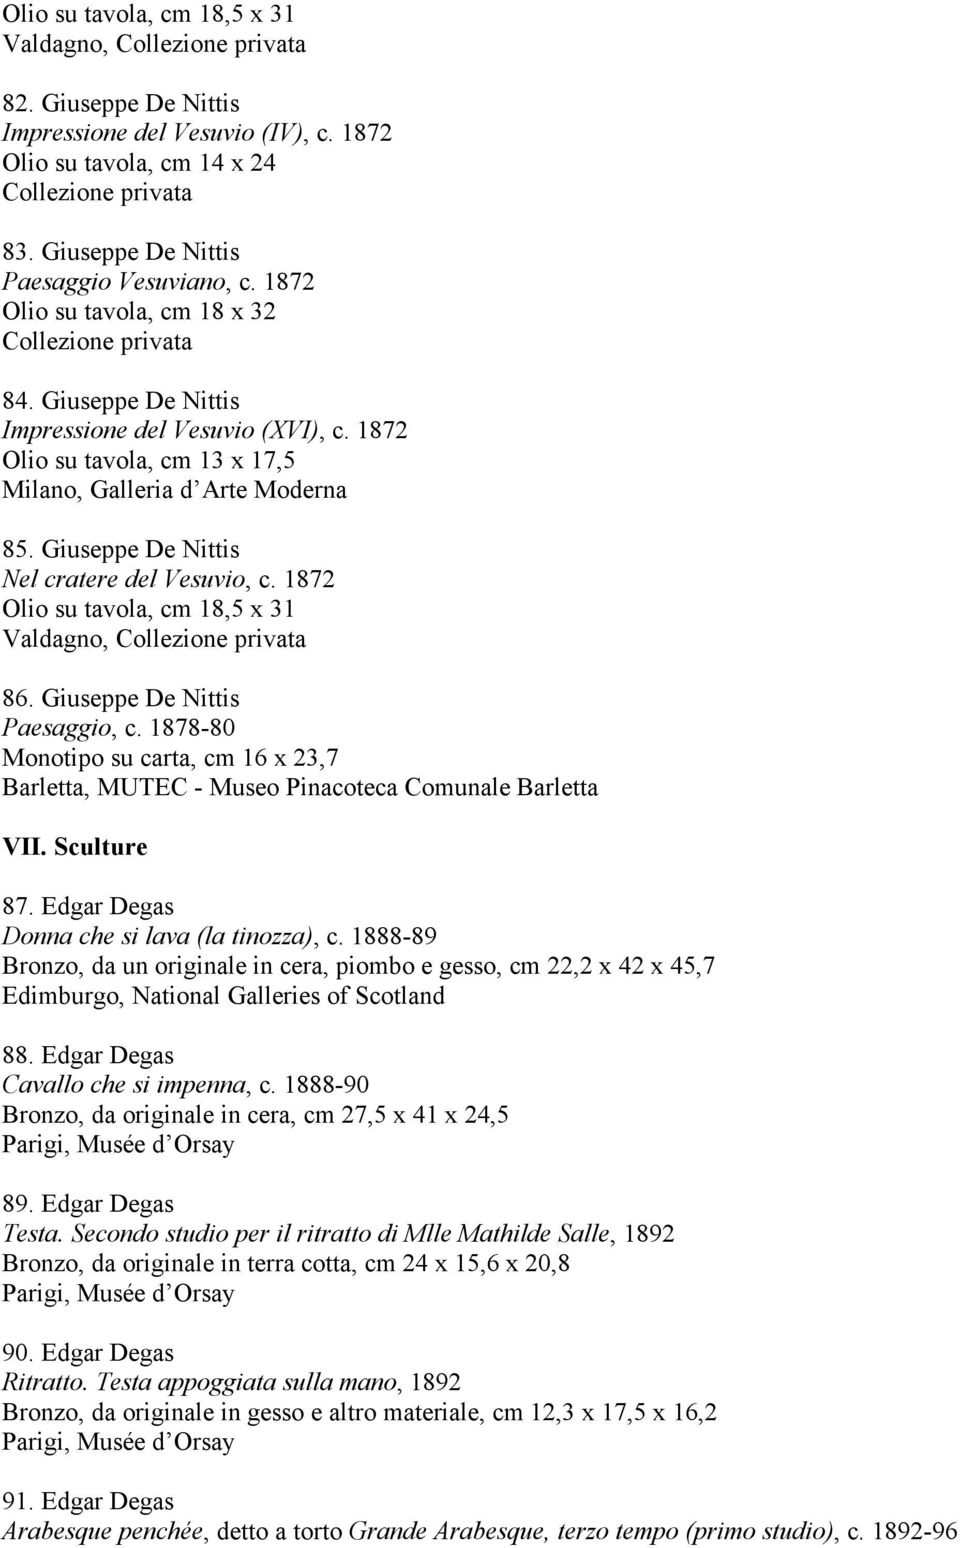 Giuseppe De Nittis Nel cratere del Vesuvio, c. 1872 Olio su tavola, cm 18,5 x 31 Valdagno, 86. Giuseppe De Nittis Paesaggio, c. 1878-80 Monotipo su carta, cm 16 x 23,7 VII. Sculture 87.